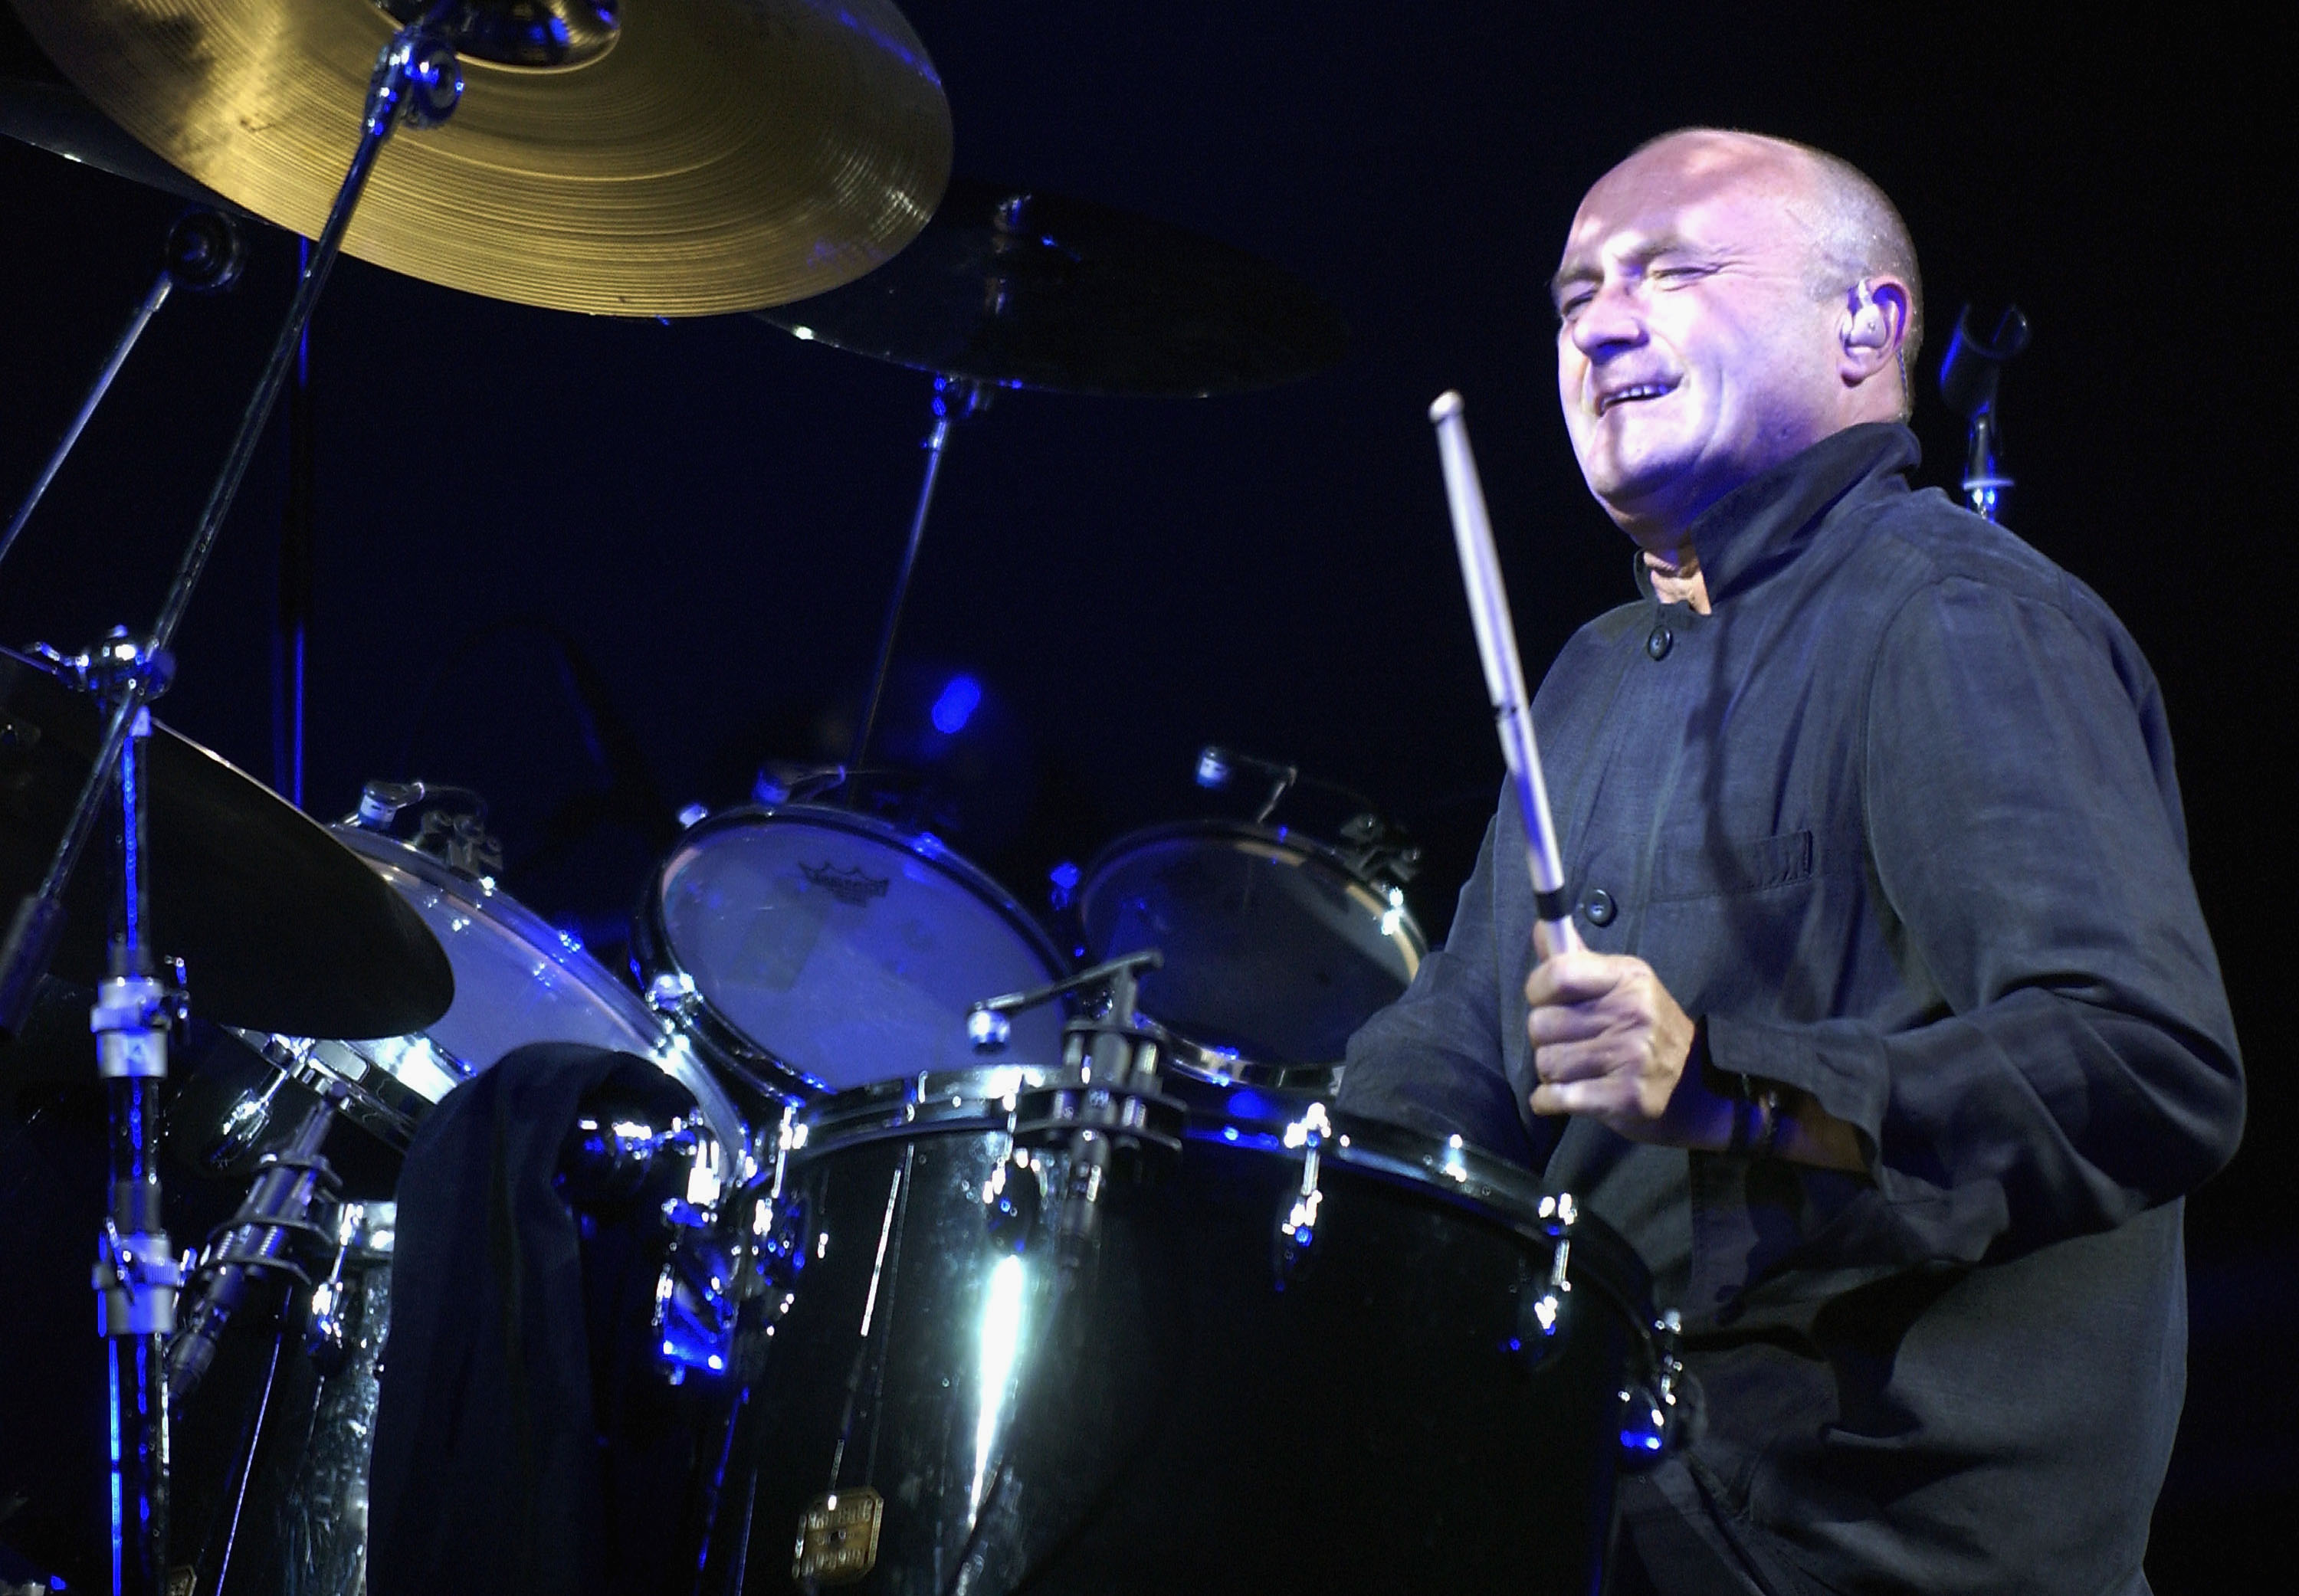 Schlagzeuger und Frontmann Phil Collins ist bekannt für seine Mitarbeit bei Genesis und seine eigene Solomusik